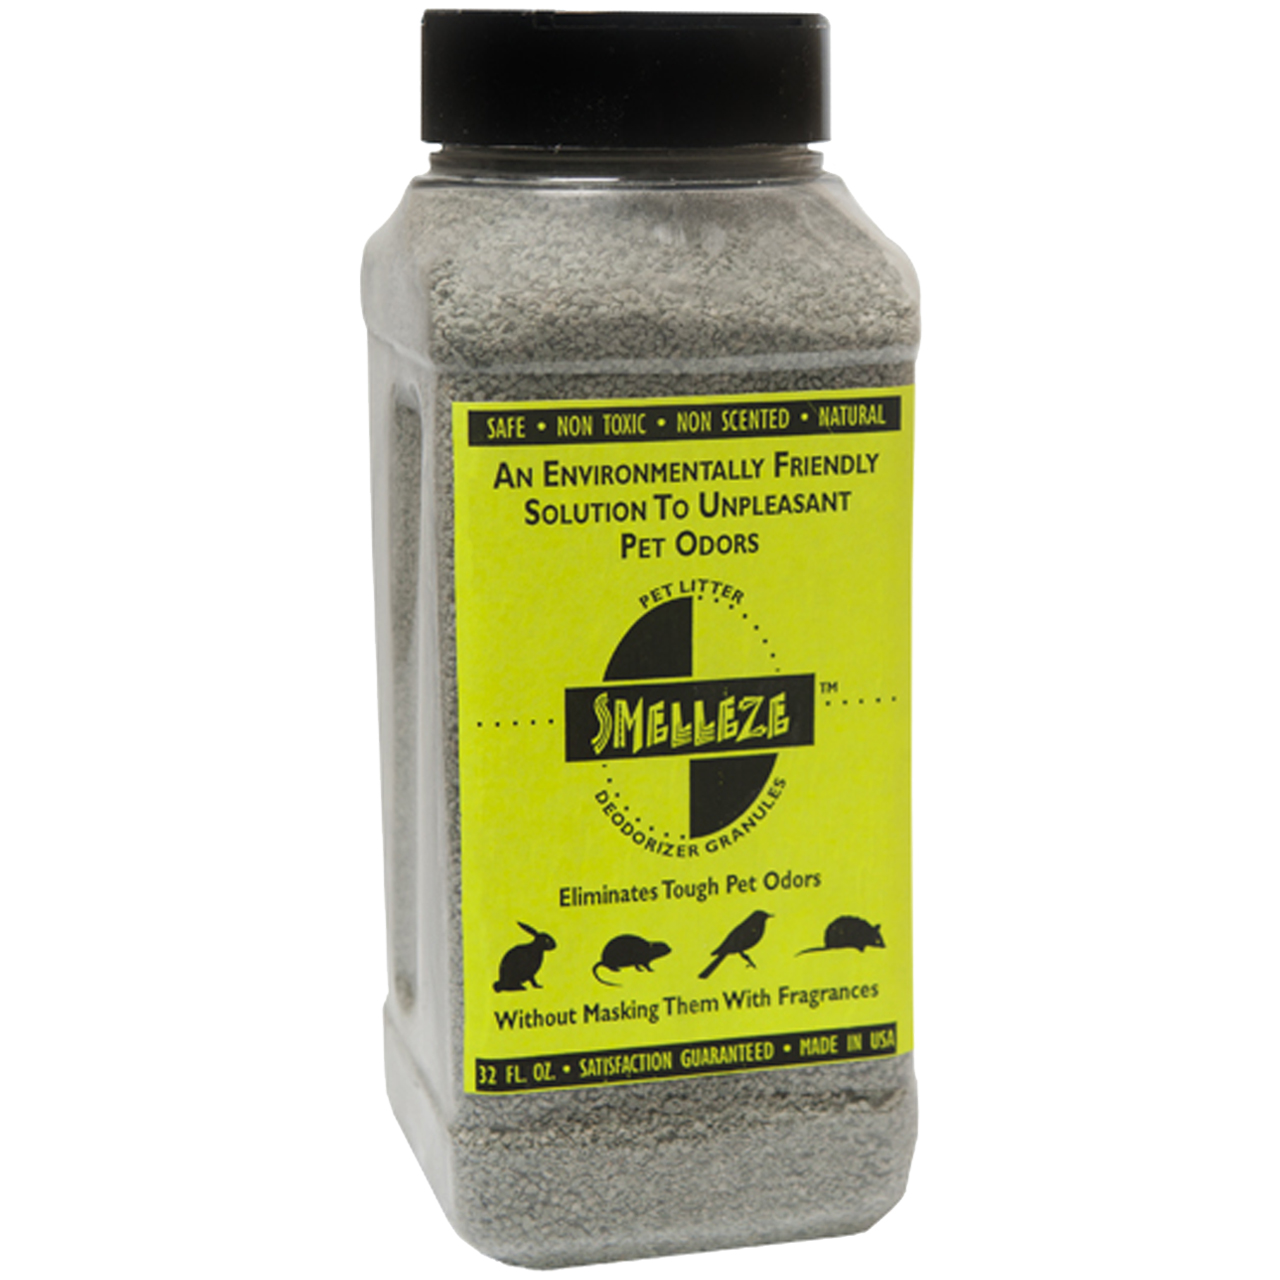 SMELLEZE Natural Pet Litter Odor Eliminator Deodorizer: 2 lb. Granules. Removes Stench - image 1 of 8